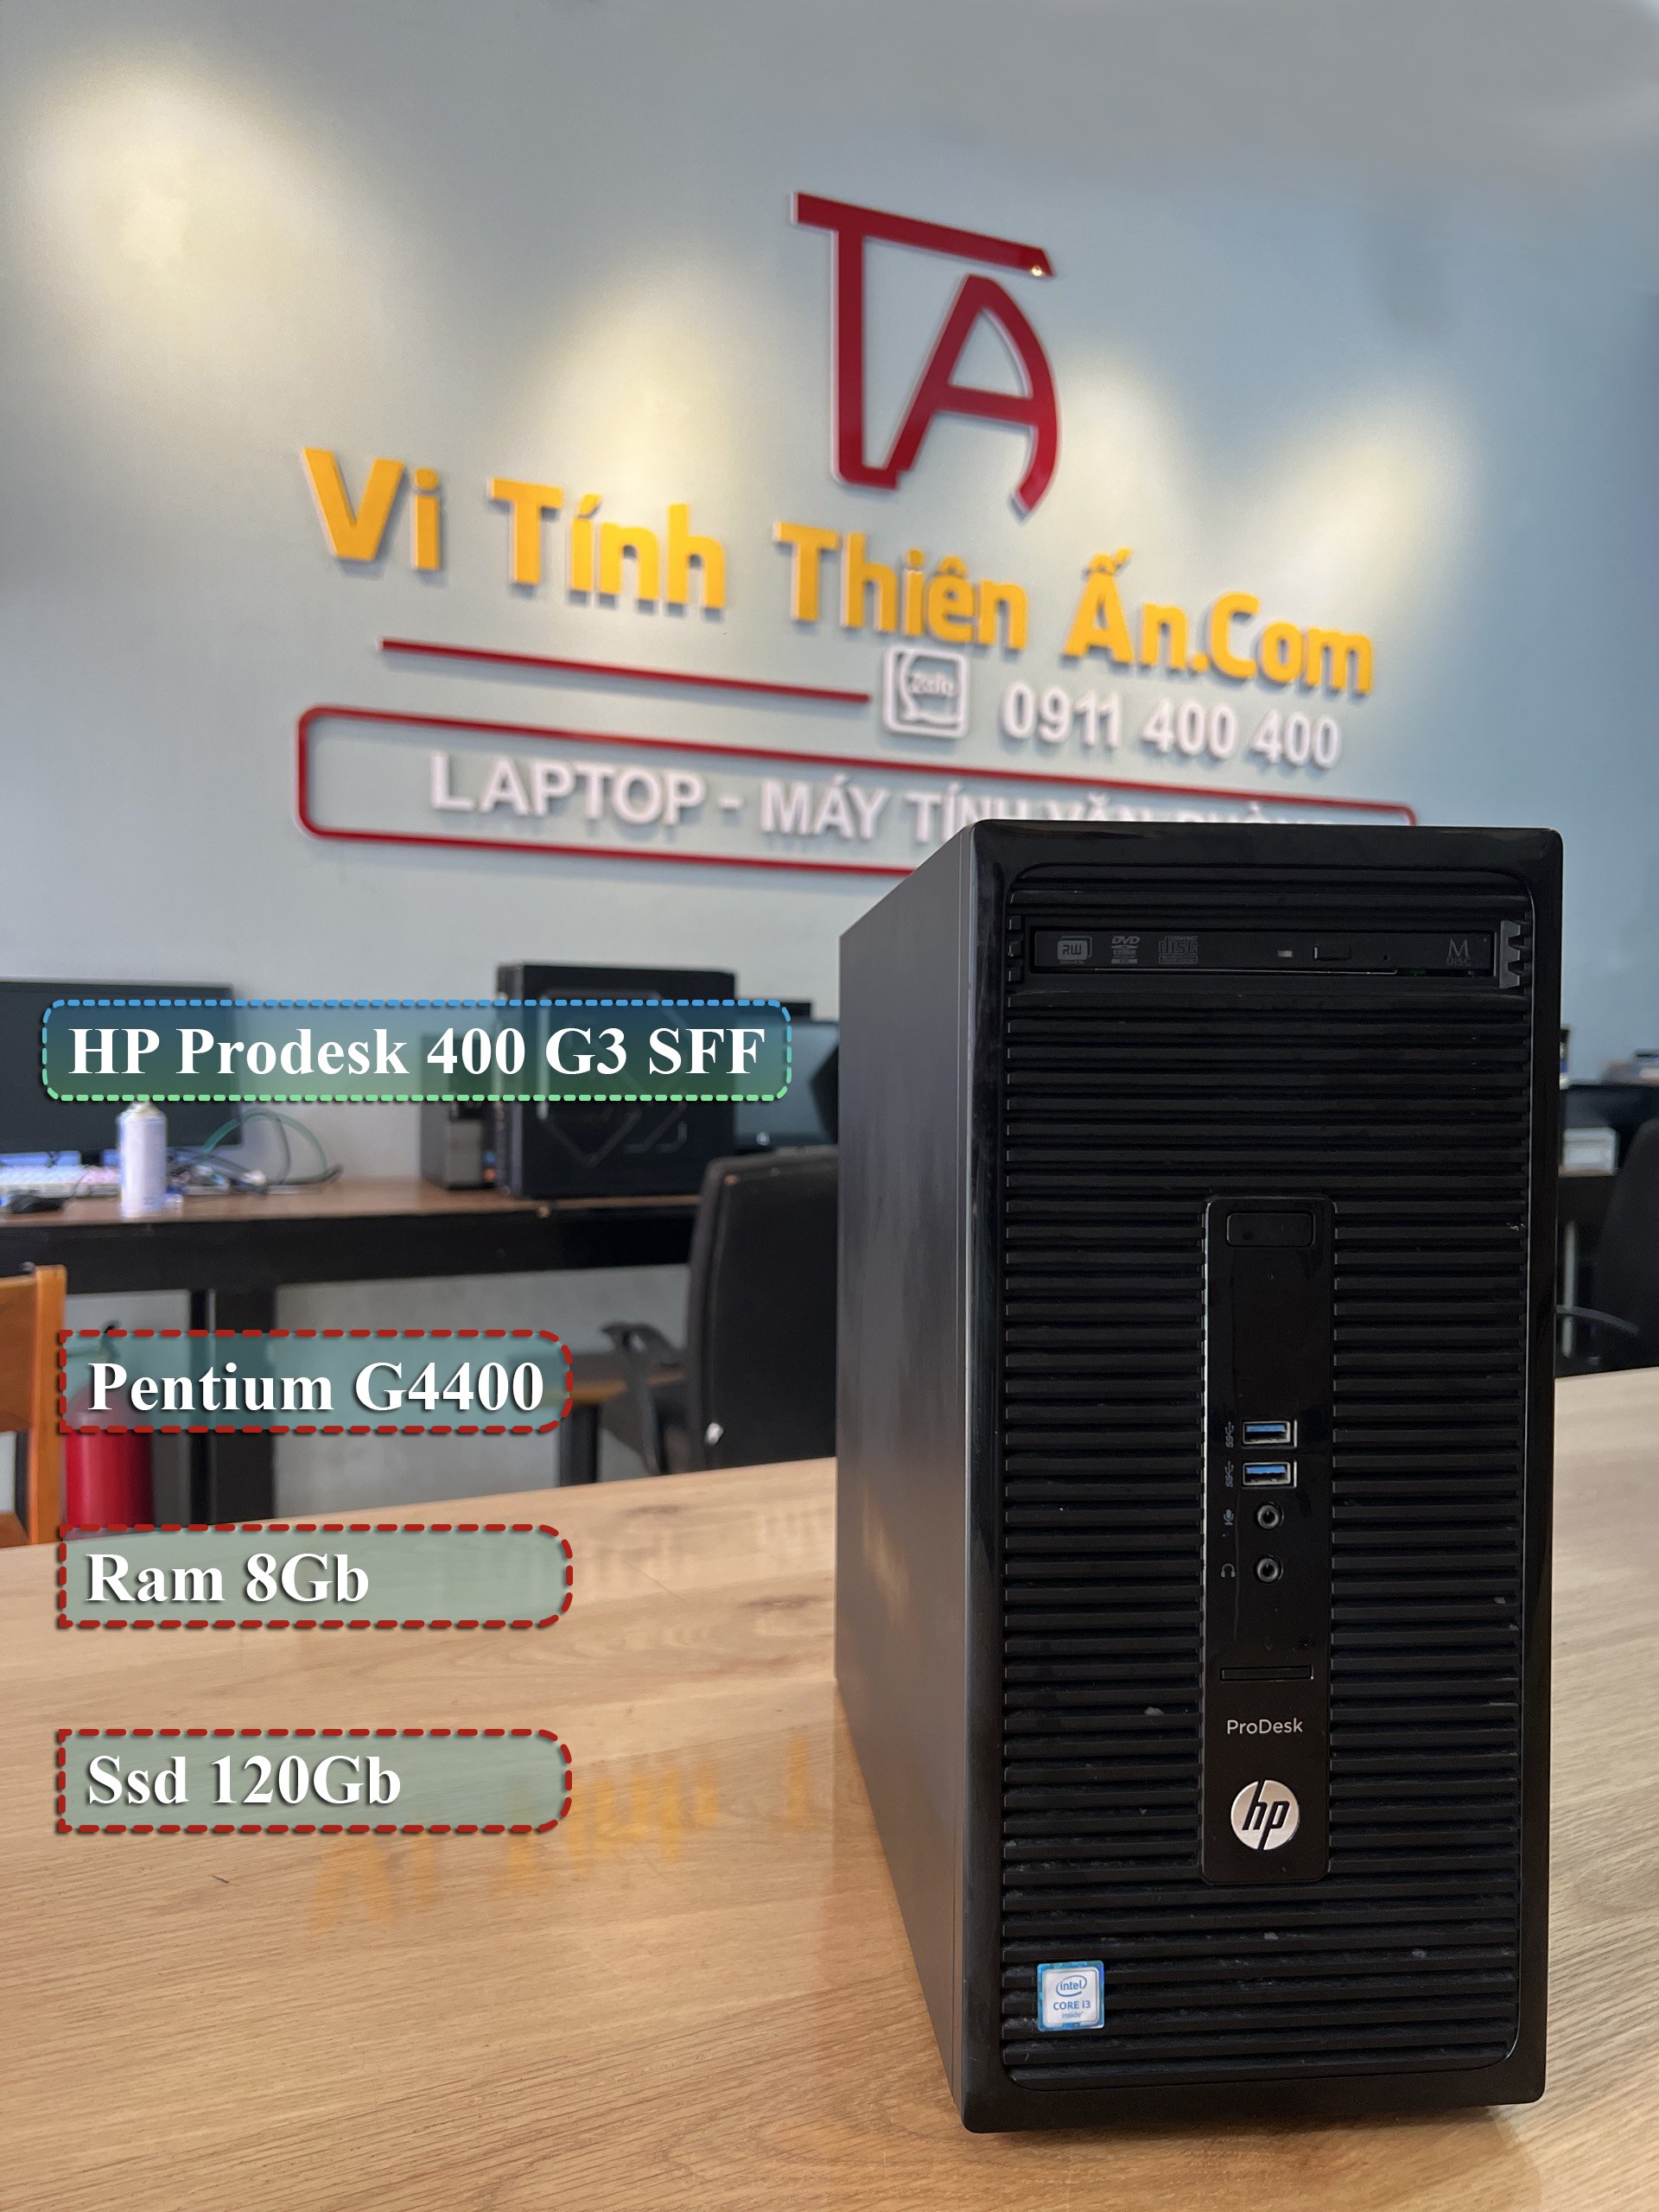 Máy tính văn phòng HP 6300/8300 MT Chip core i7  